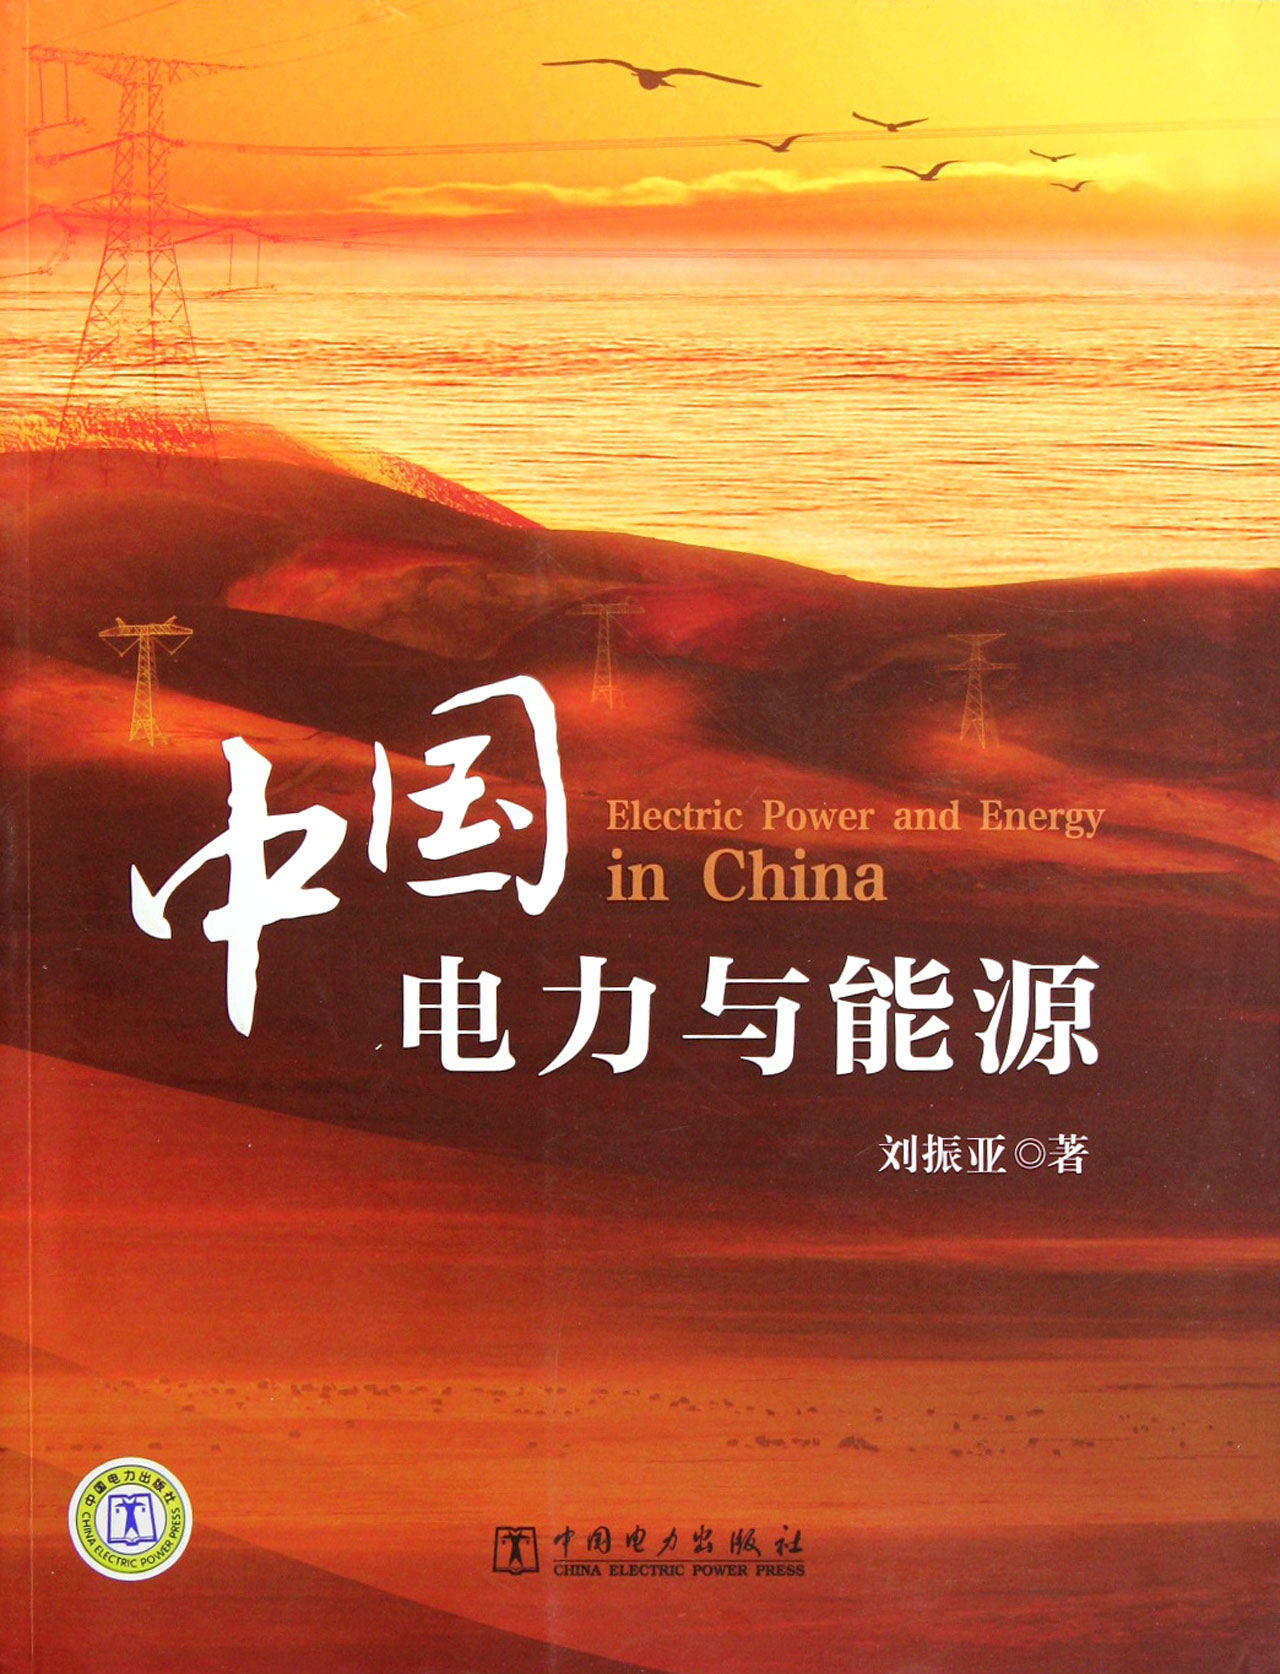 中国电力与能源 工业技术 刘振亚著 中国电力出版社 9787512326675